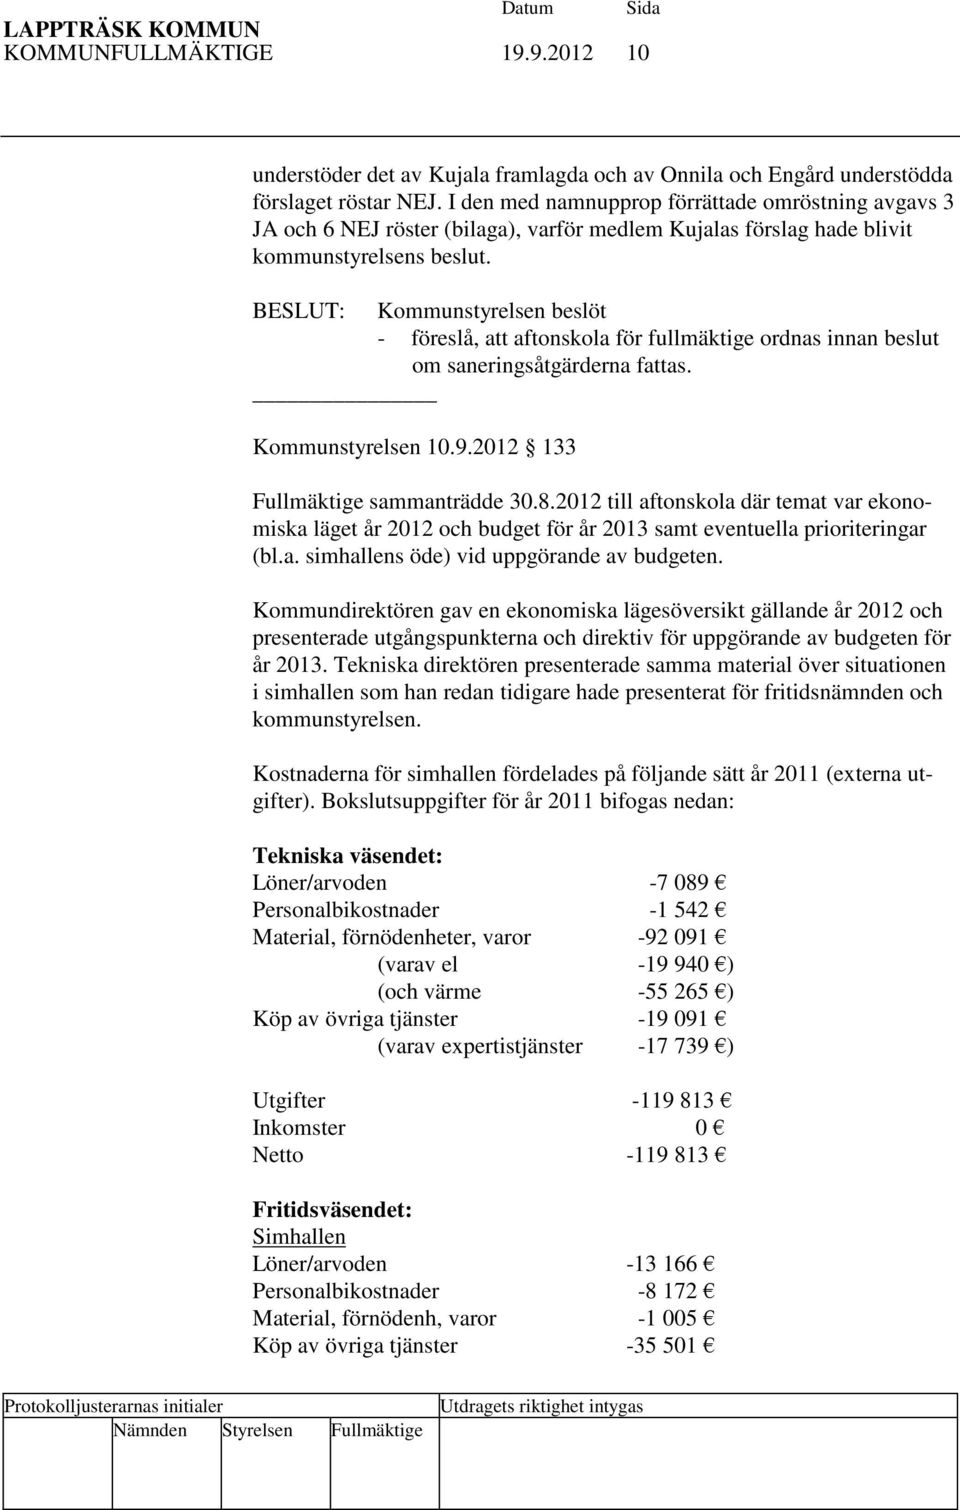 BESLUT: Kommunstyrelsen beslöt - föreslå, att aftonskola för fullmäktige ordnas innan beslut om saneringsåtgärderna fattas. Kommunstyrelsen 10.9.2012 133 Fullmäktige sammanträdde 30.8.